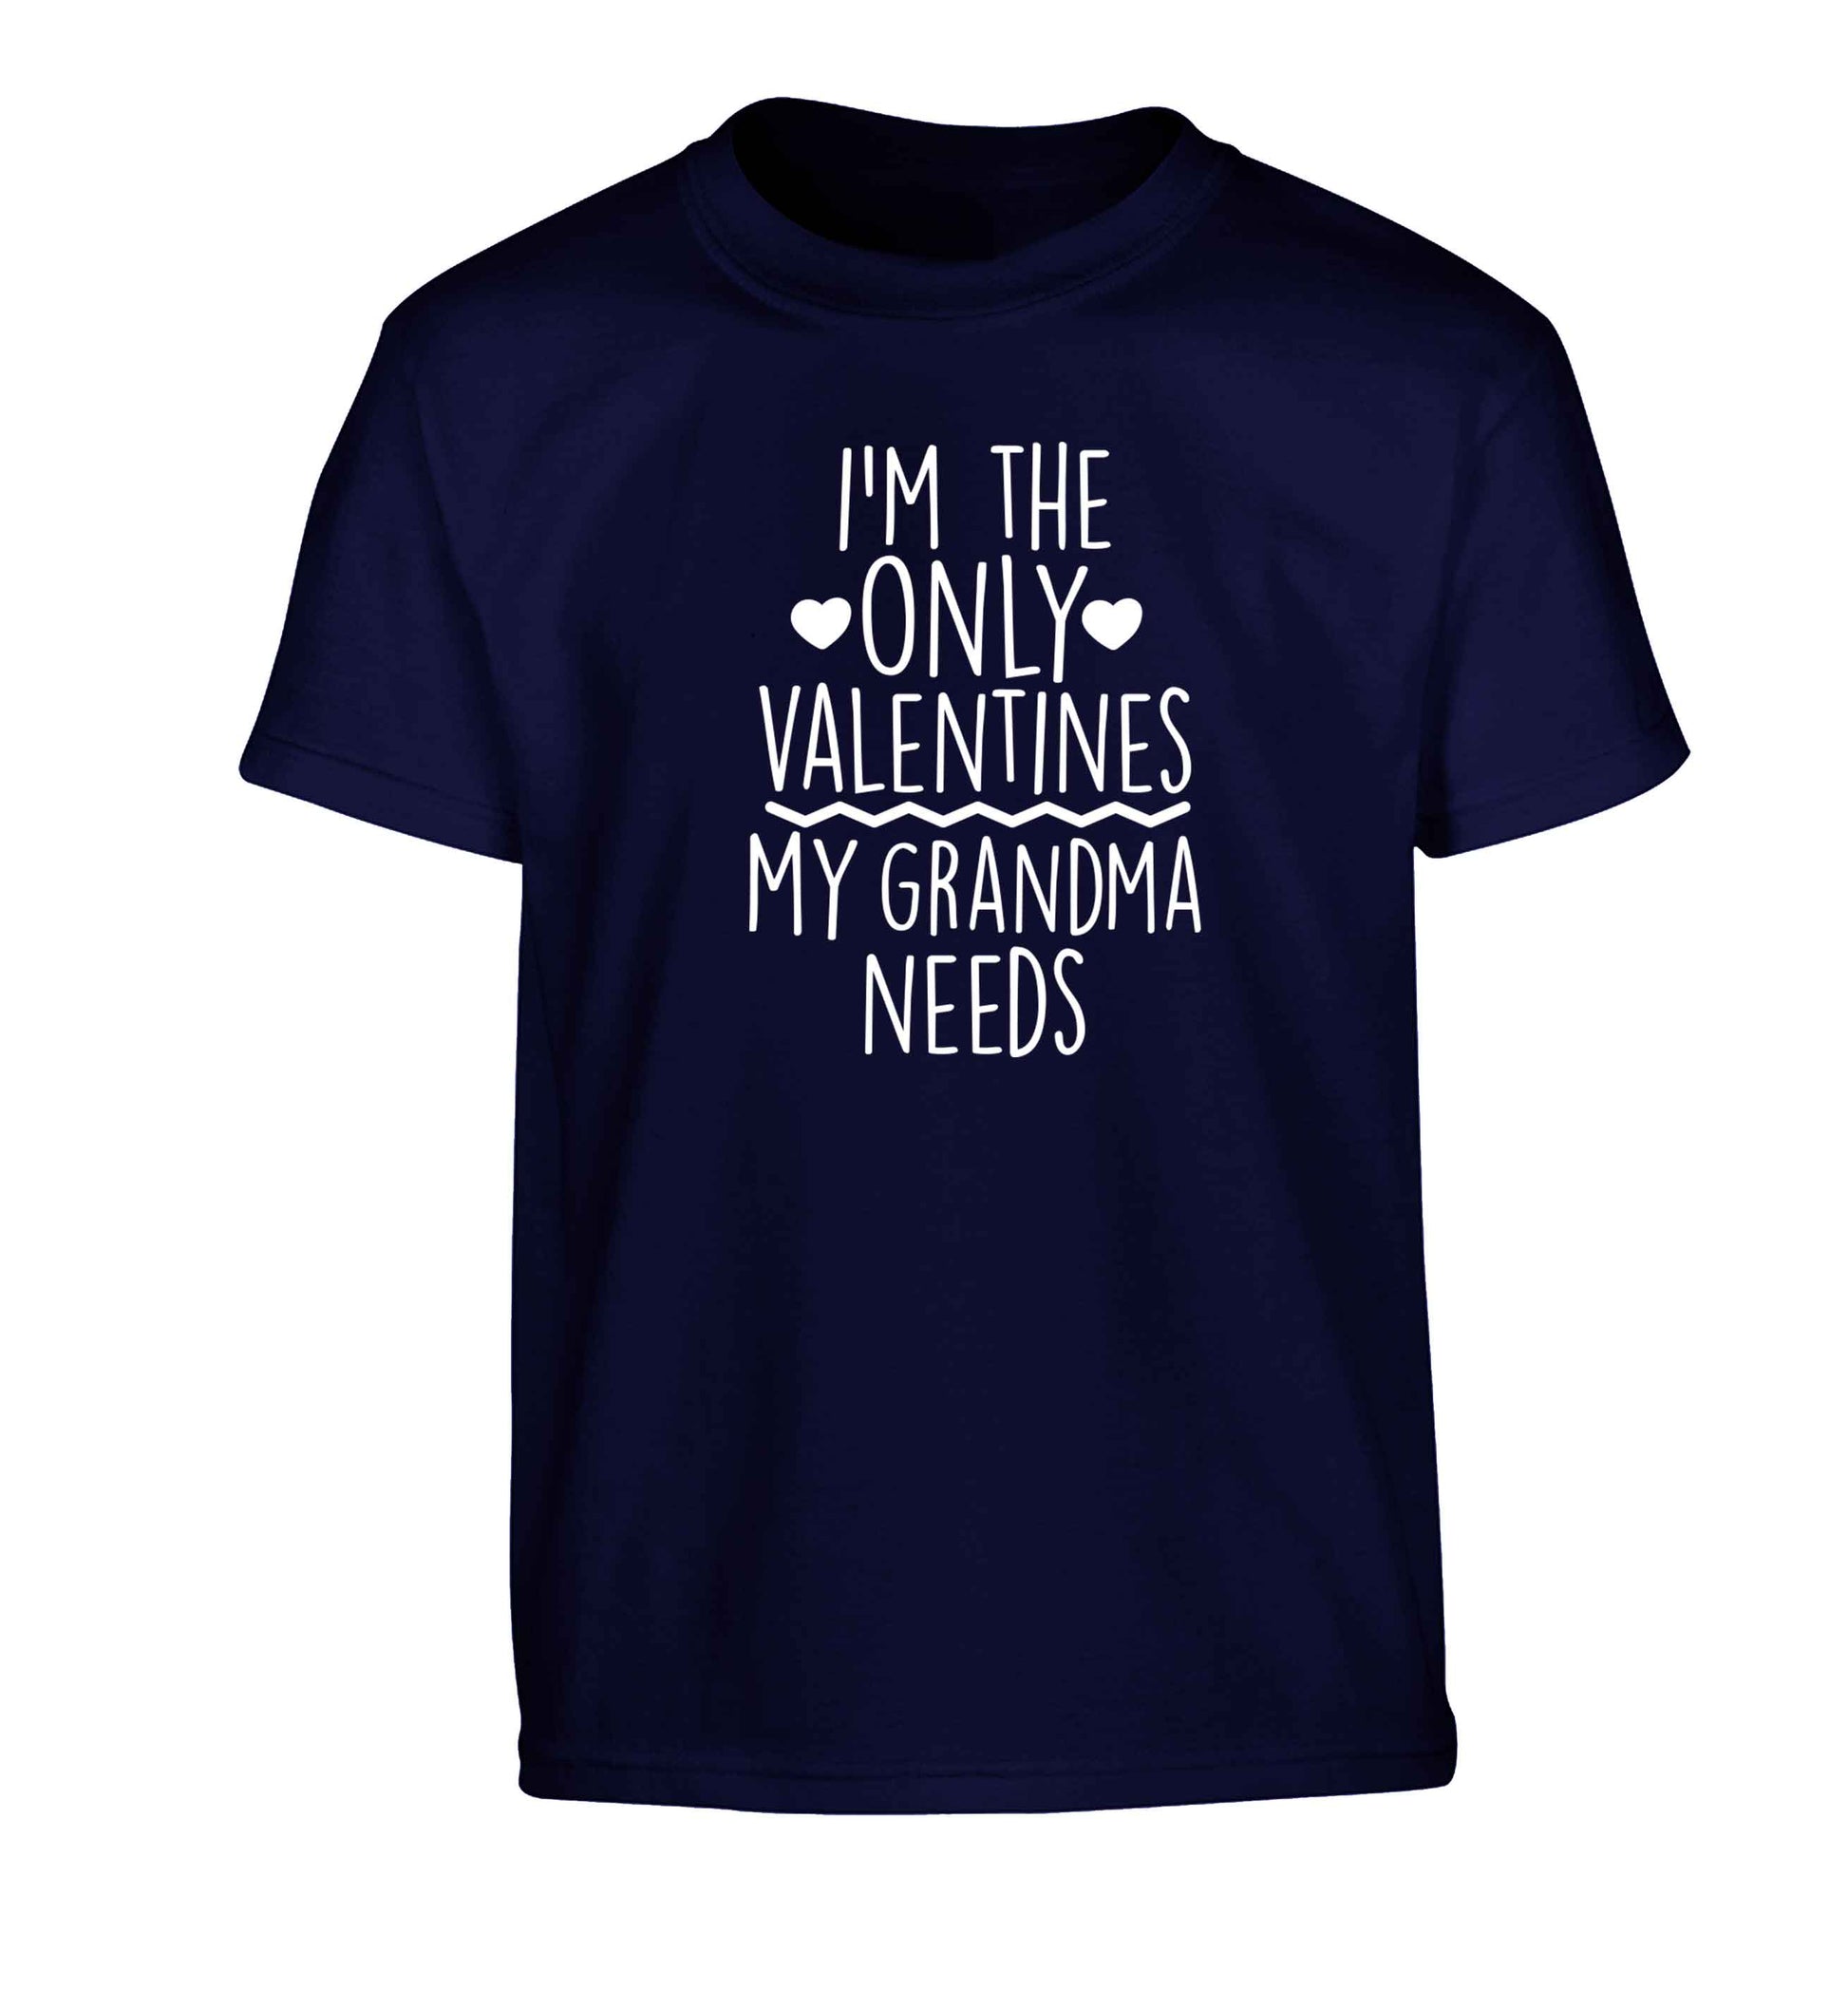 I'm the only valentines my grandma needs Children's navy Tshirt 12-13 Years